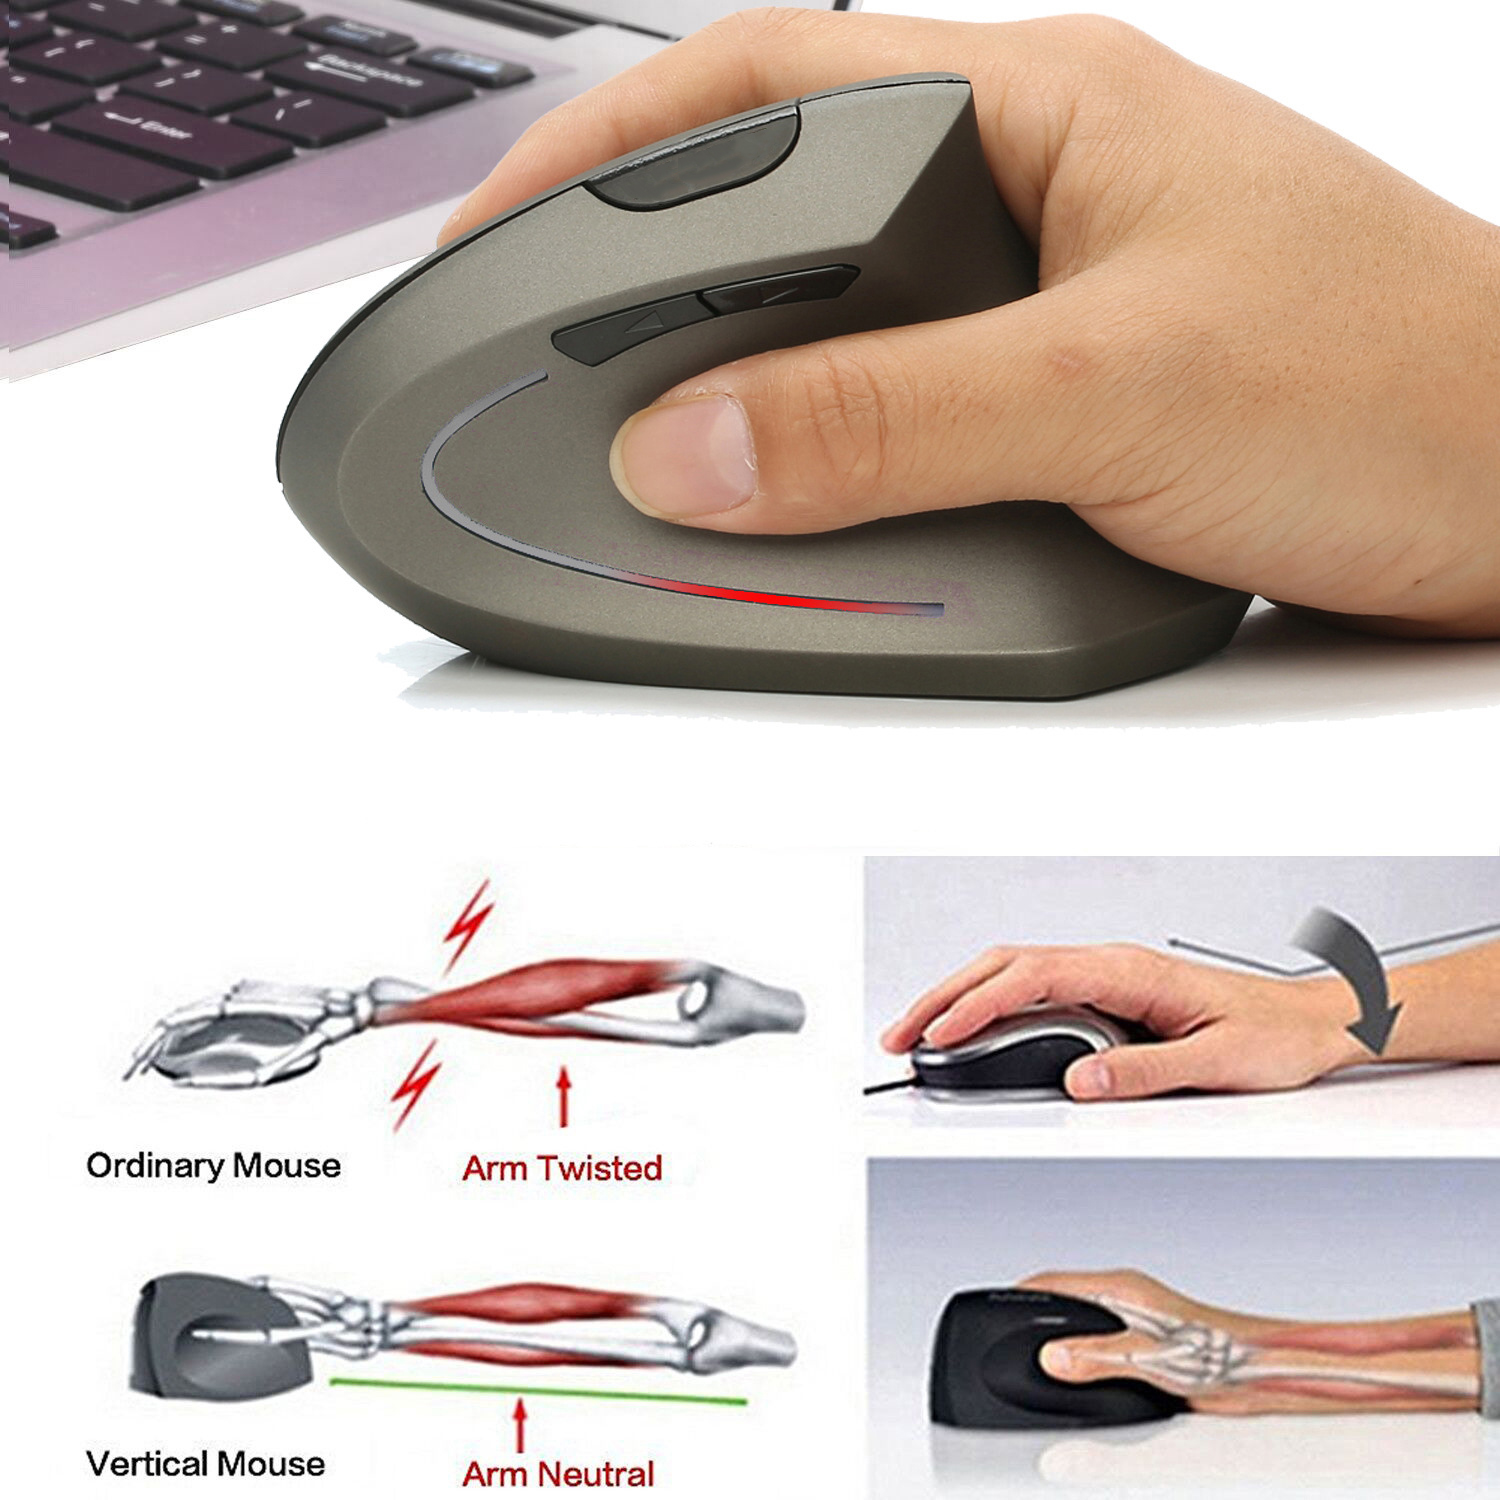 Chuột không dây kiểu đứng sạc pin T22 wireless USB 2.4GHz chống mỏi tay chuyên dùng cho pc laptop macbook ipad tivi